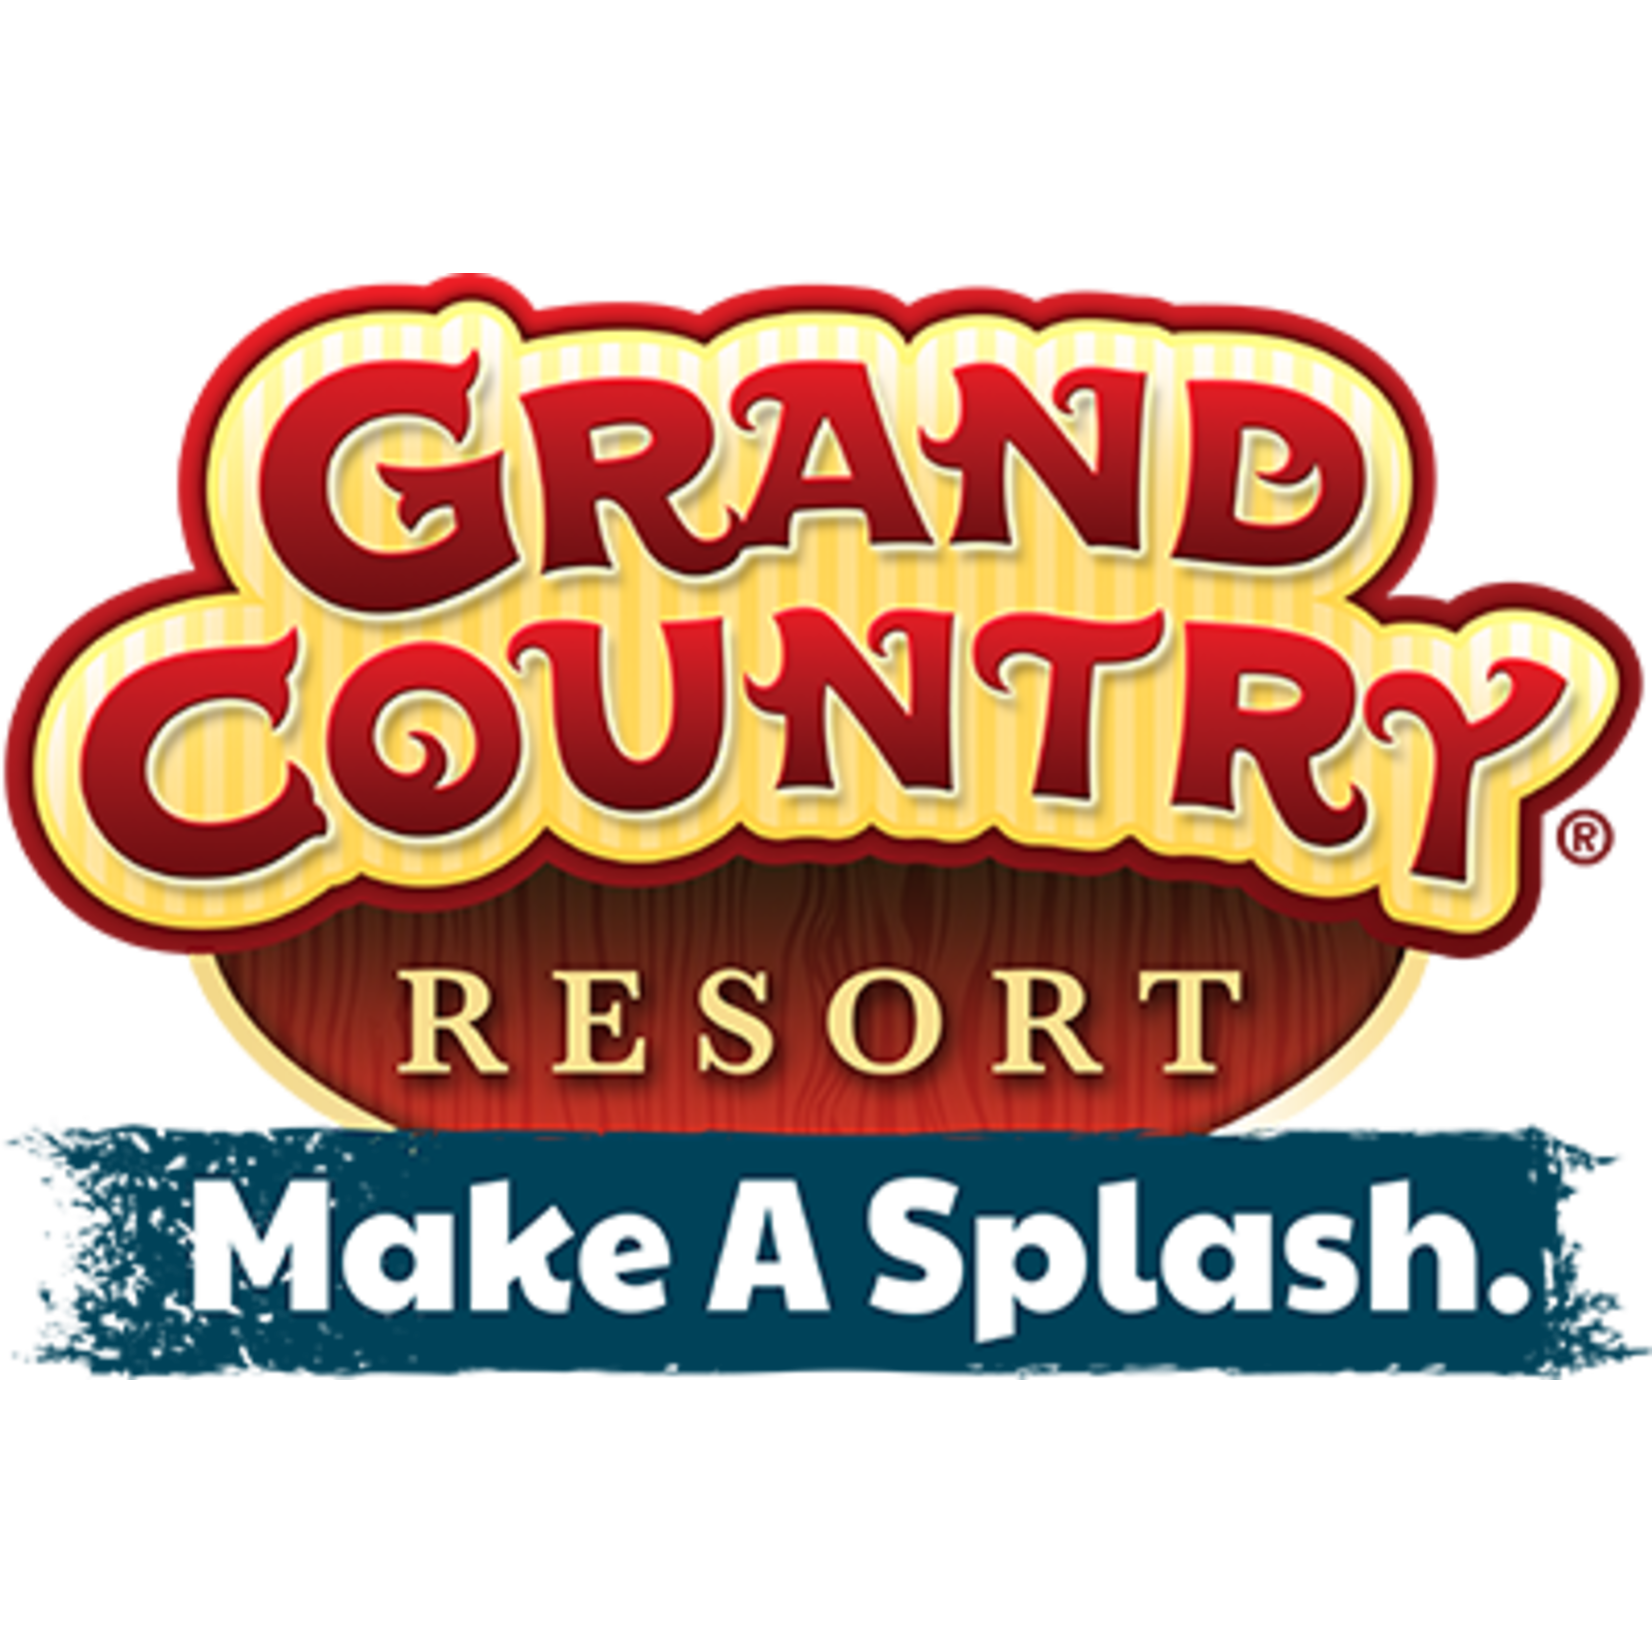 MO-Branson-Grand Country Music Hall Show MO-Branson-Grand Country Music Hall Show $95.10 Pair of Tickets to Ozarks Gospel Show